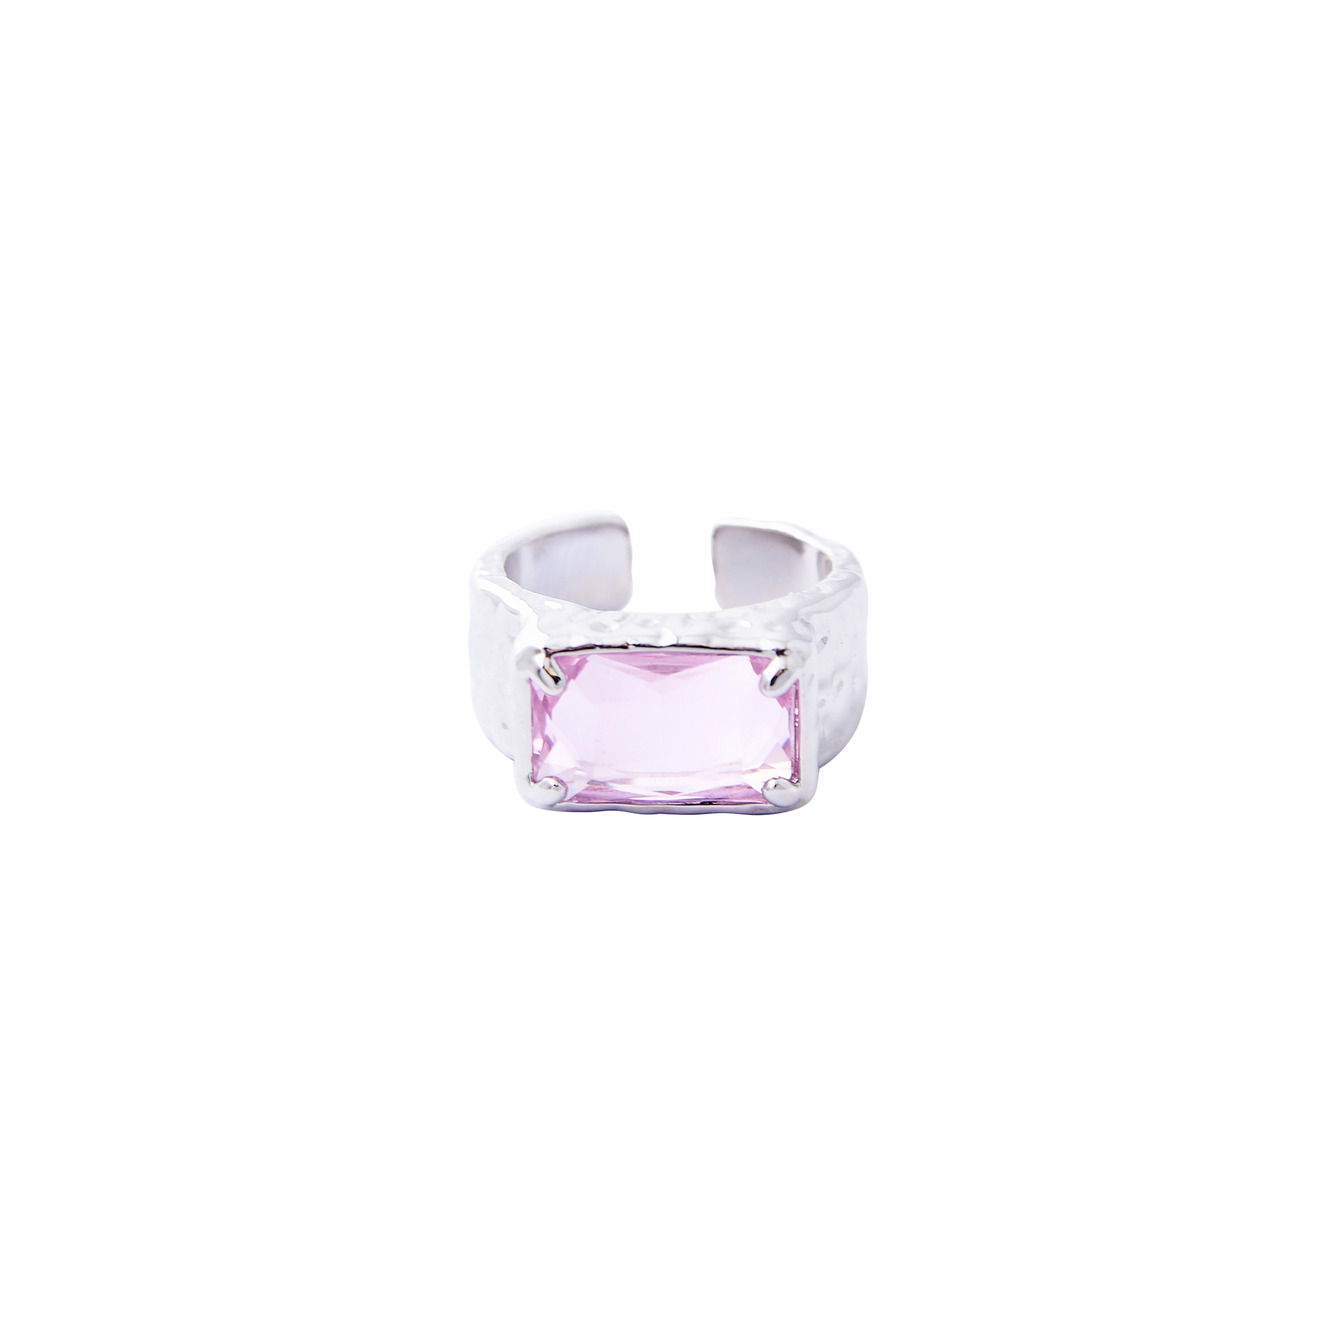 herald percy золотистое кольцо с прямоугольным кристаллом Herald Percy Серебристое кольцо с крупным розовым кристаллом